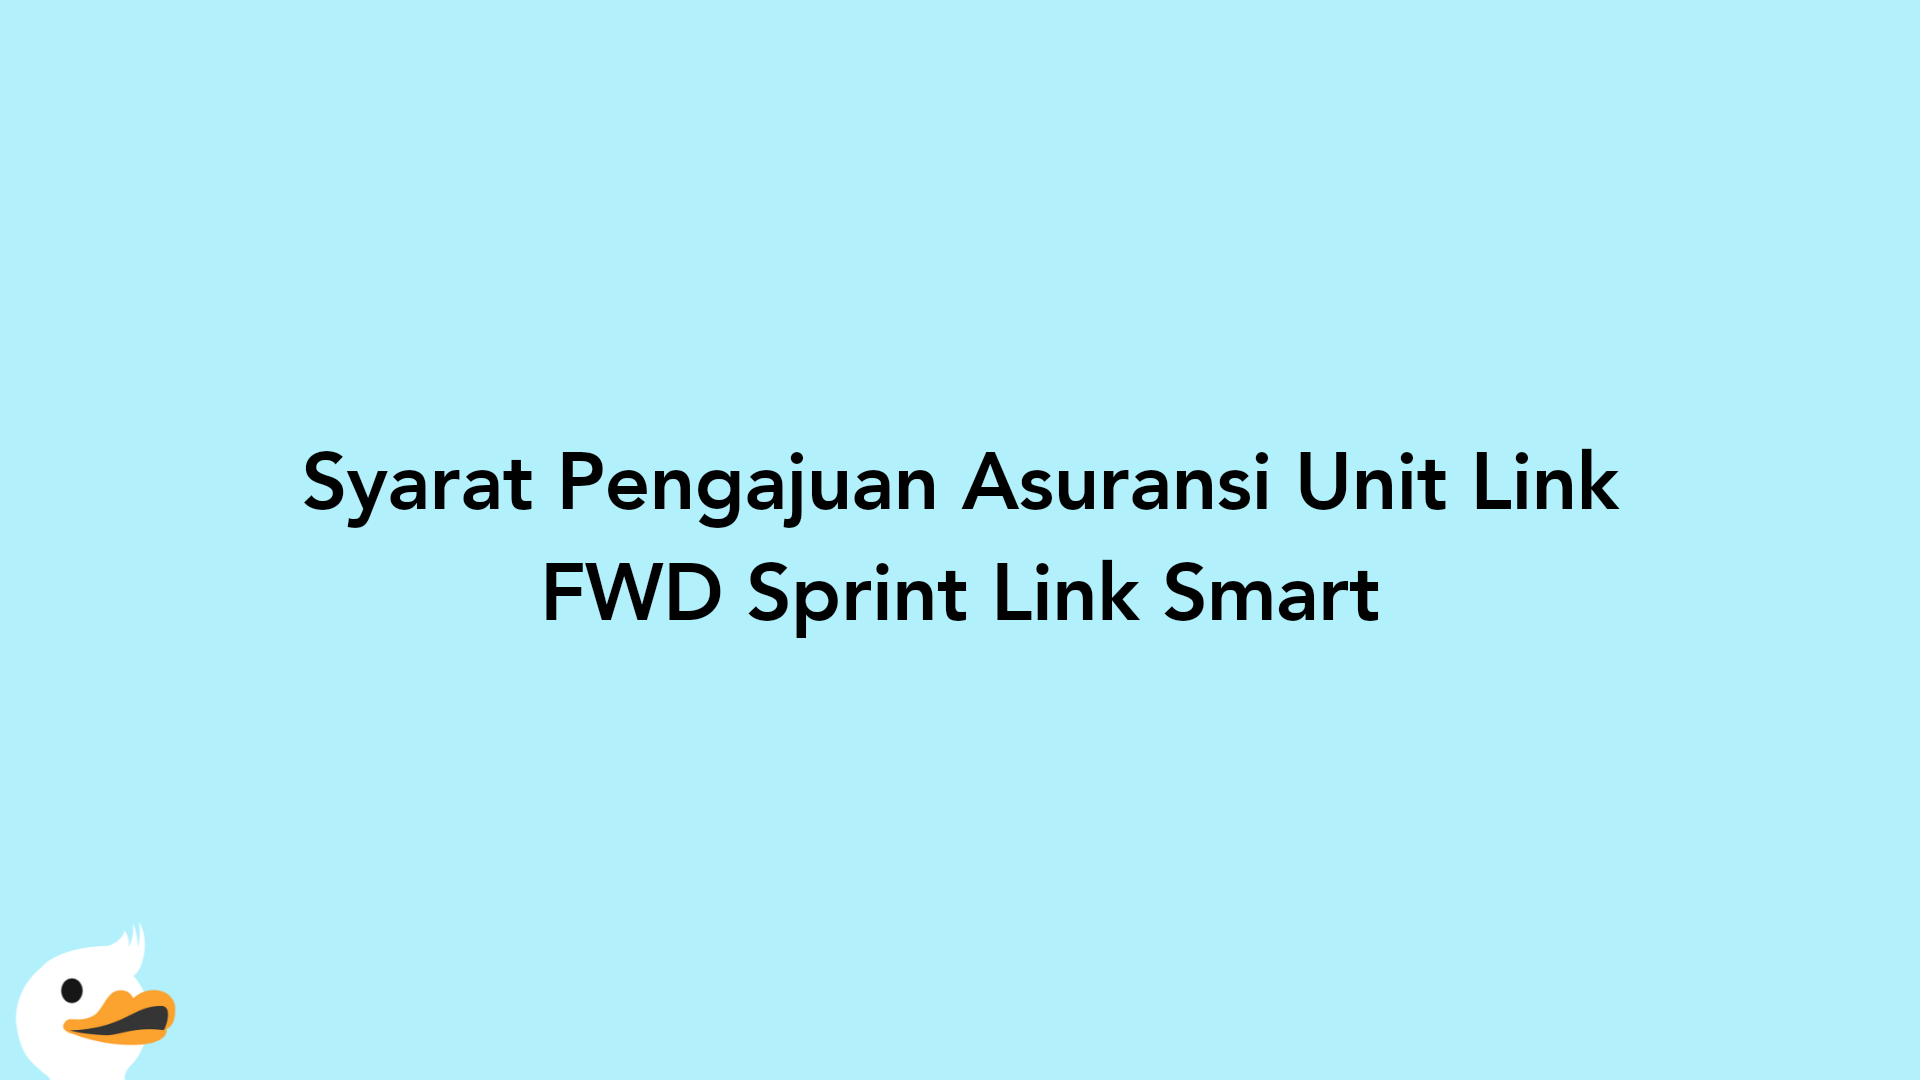 Syarat Pengajuan Asuransi Unit Link FWD Sprint Link Smart